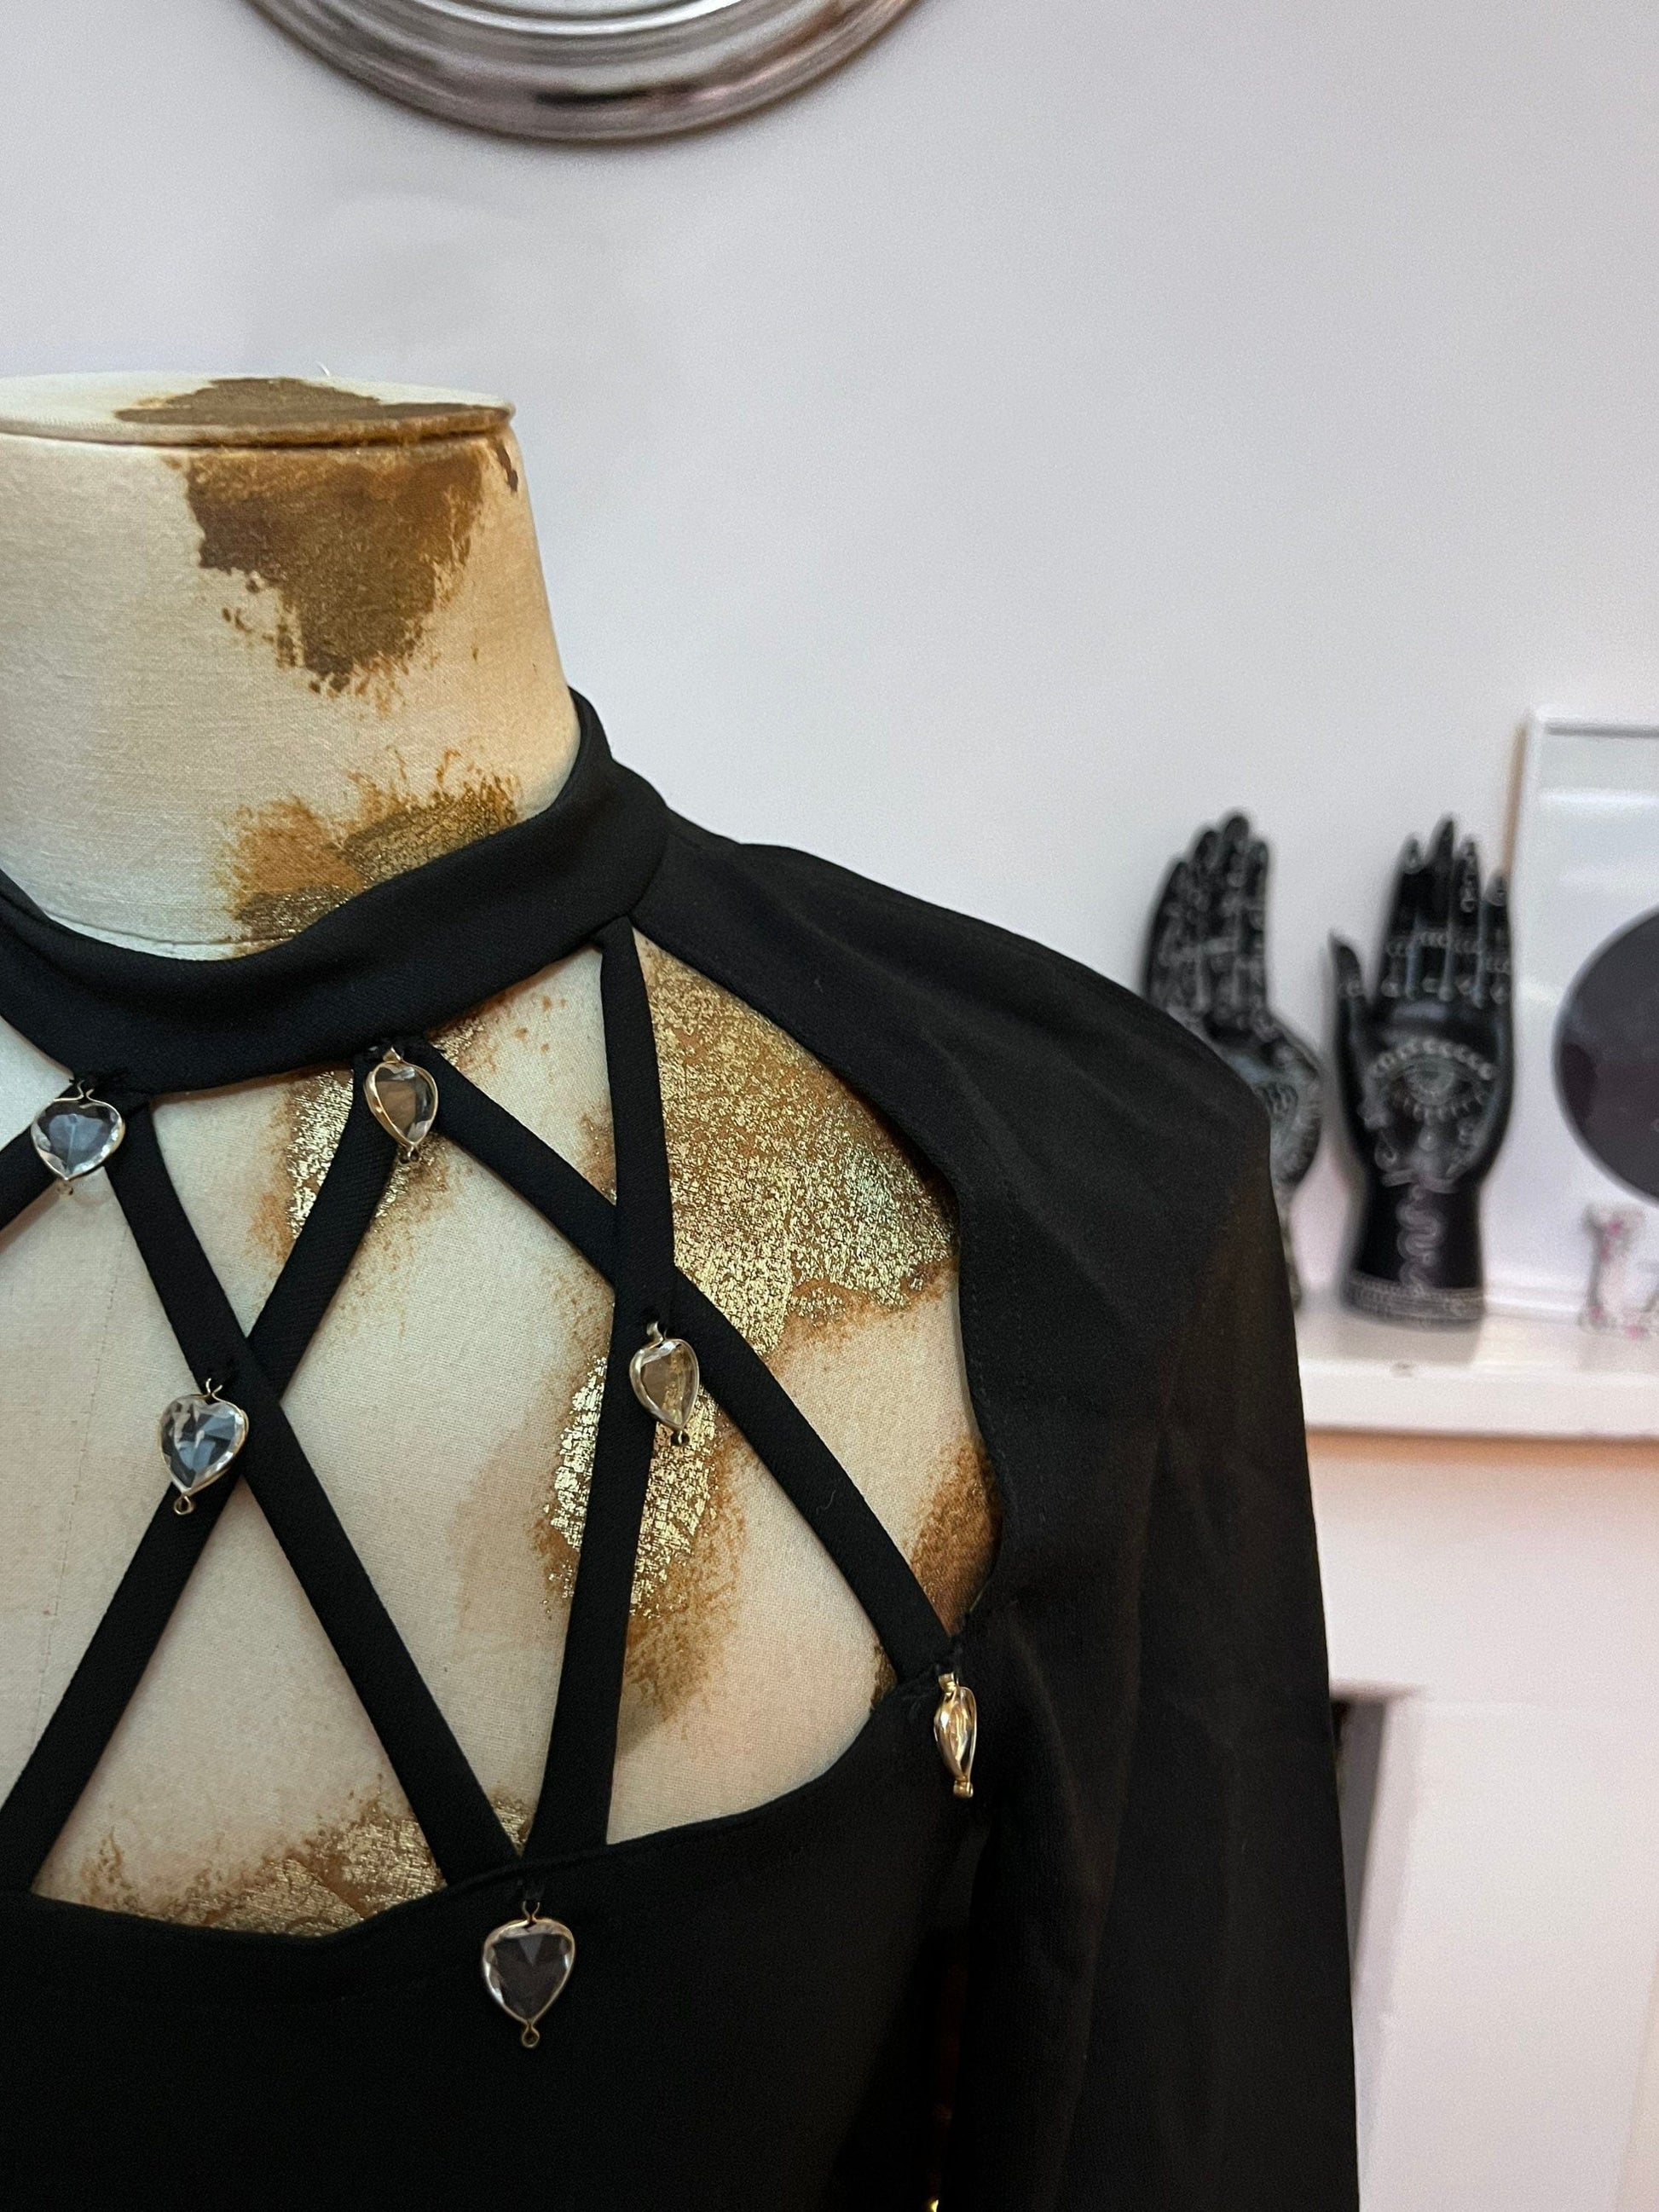 Vintage 80s Black Bodycon Dress Cages neckline with diamanté heart details 3/4 Sleeve open back dress UK8-10